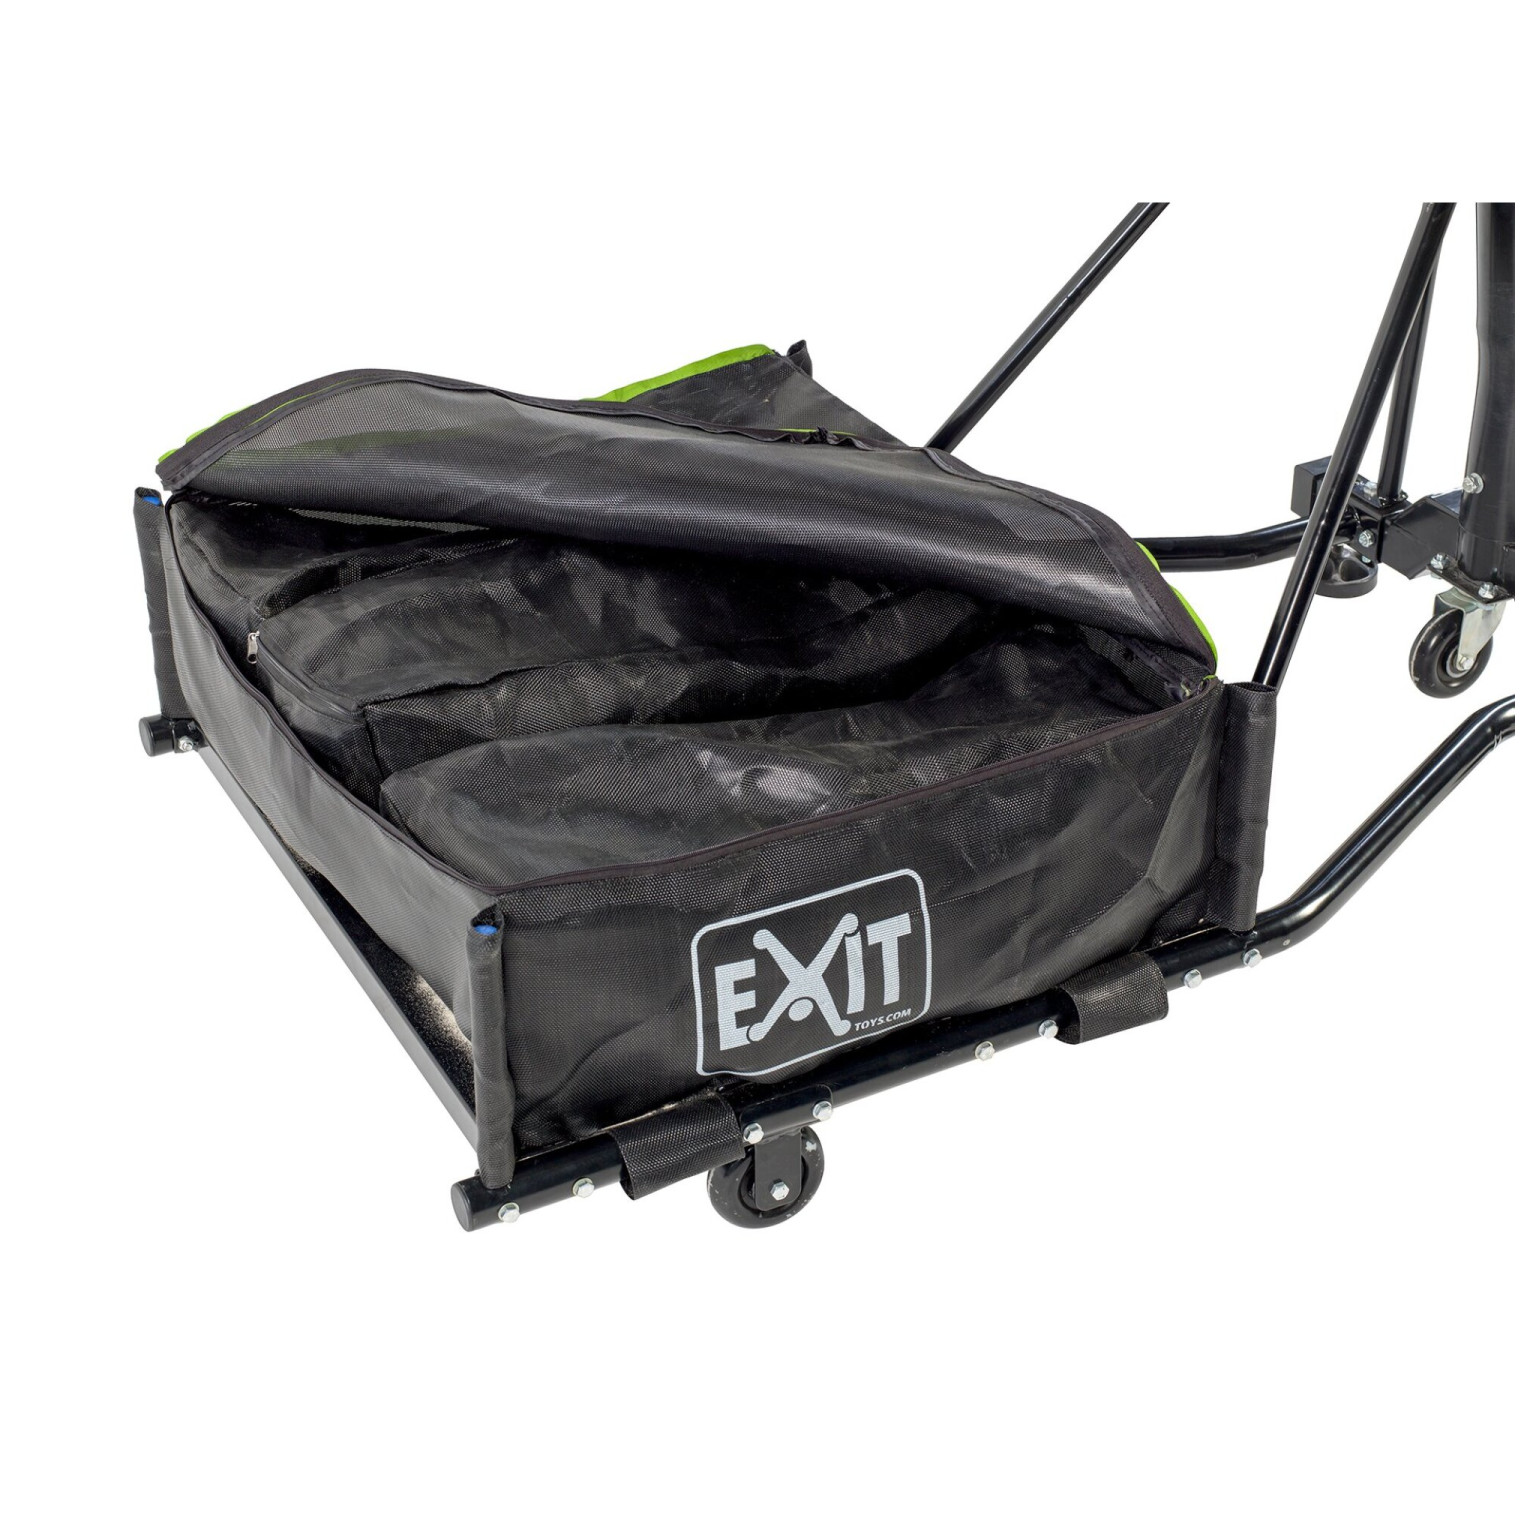 EXIT Galaxy verplaatsbaar basketbalbord op wielen met dunkri